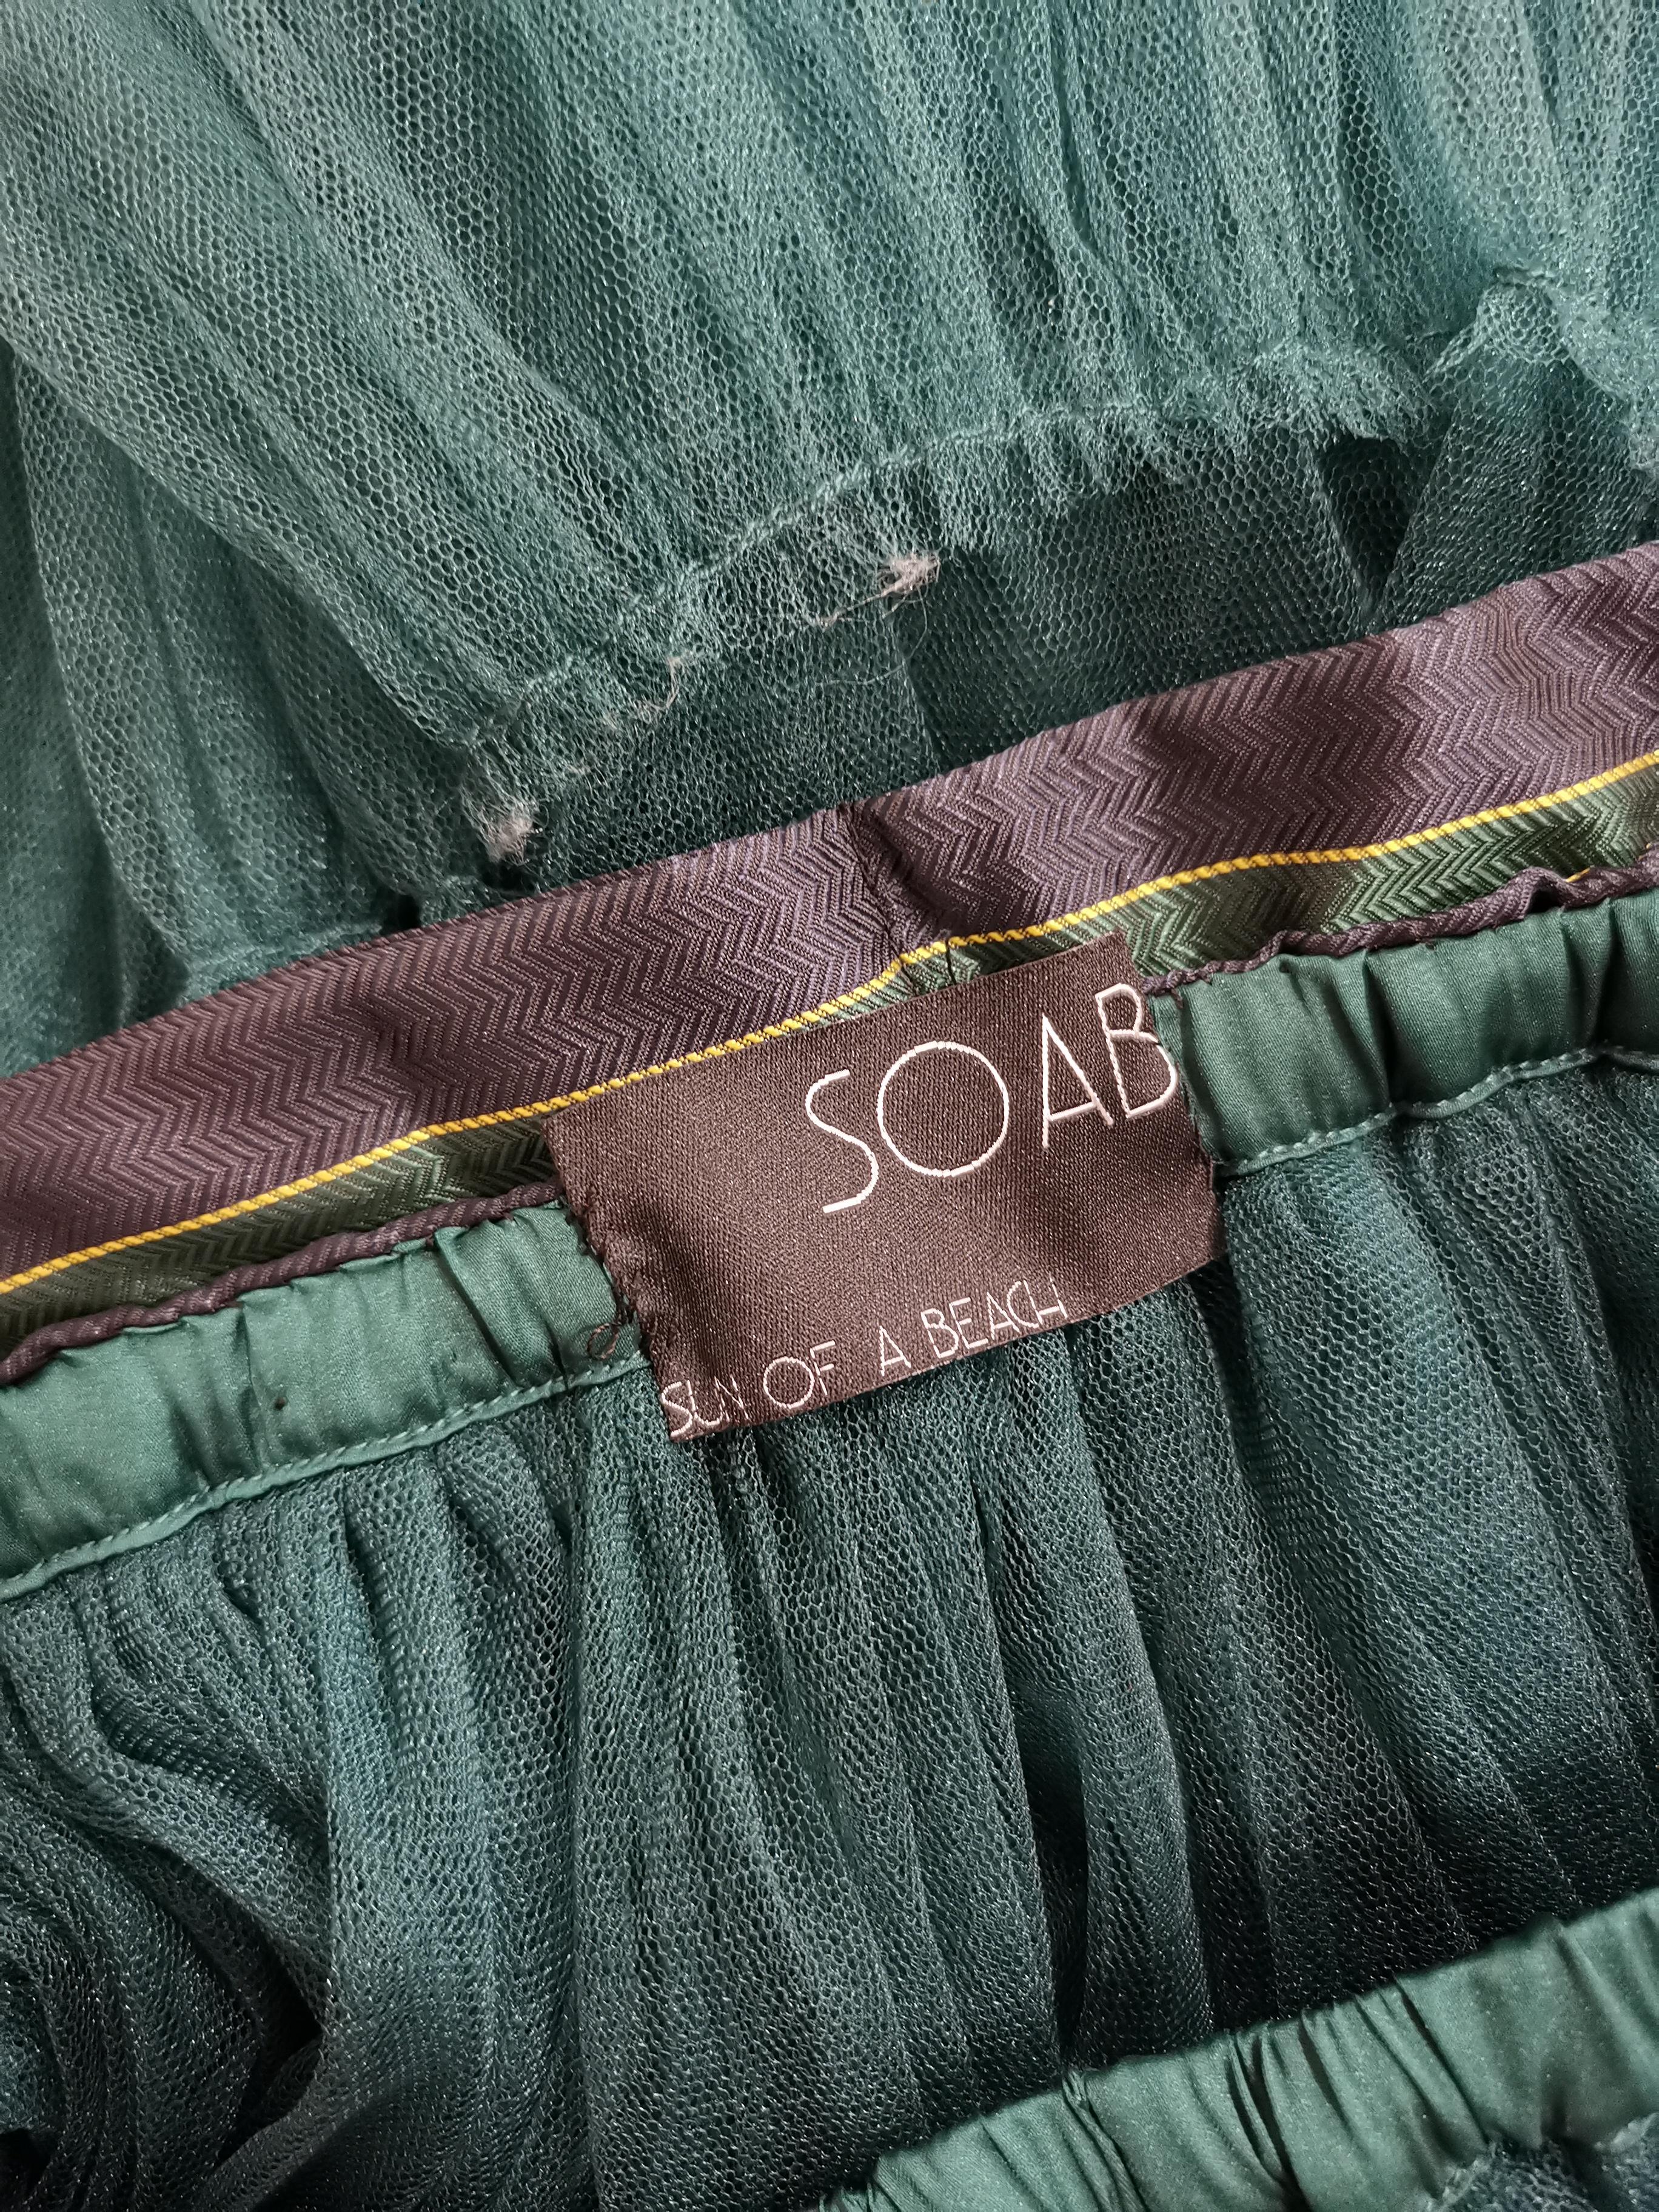 Black SOAB green tulle skirt / Dress